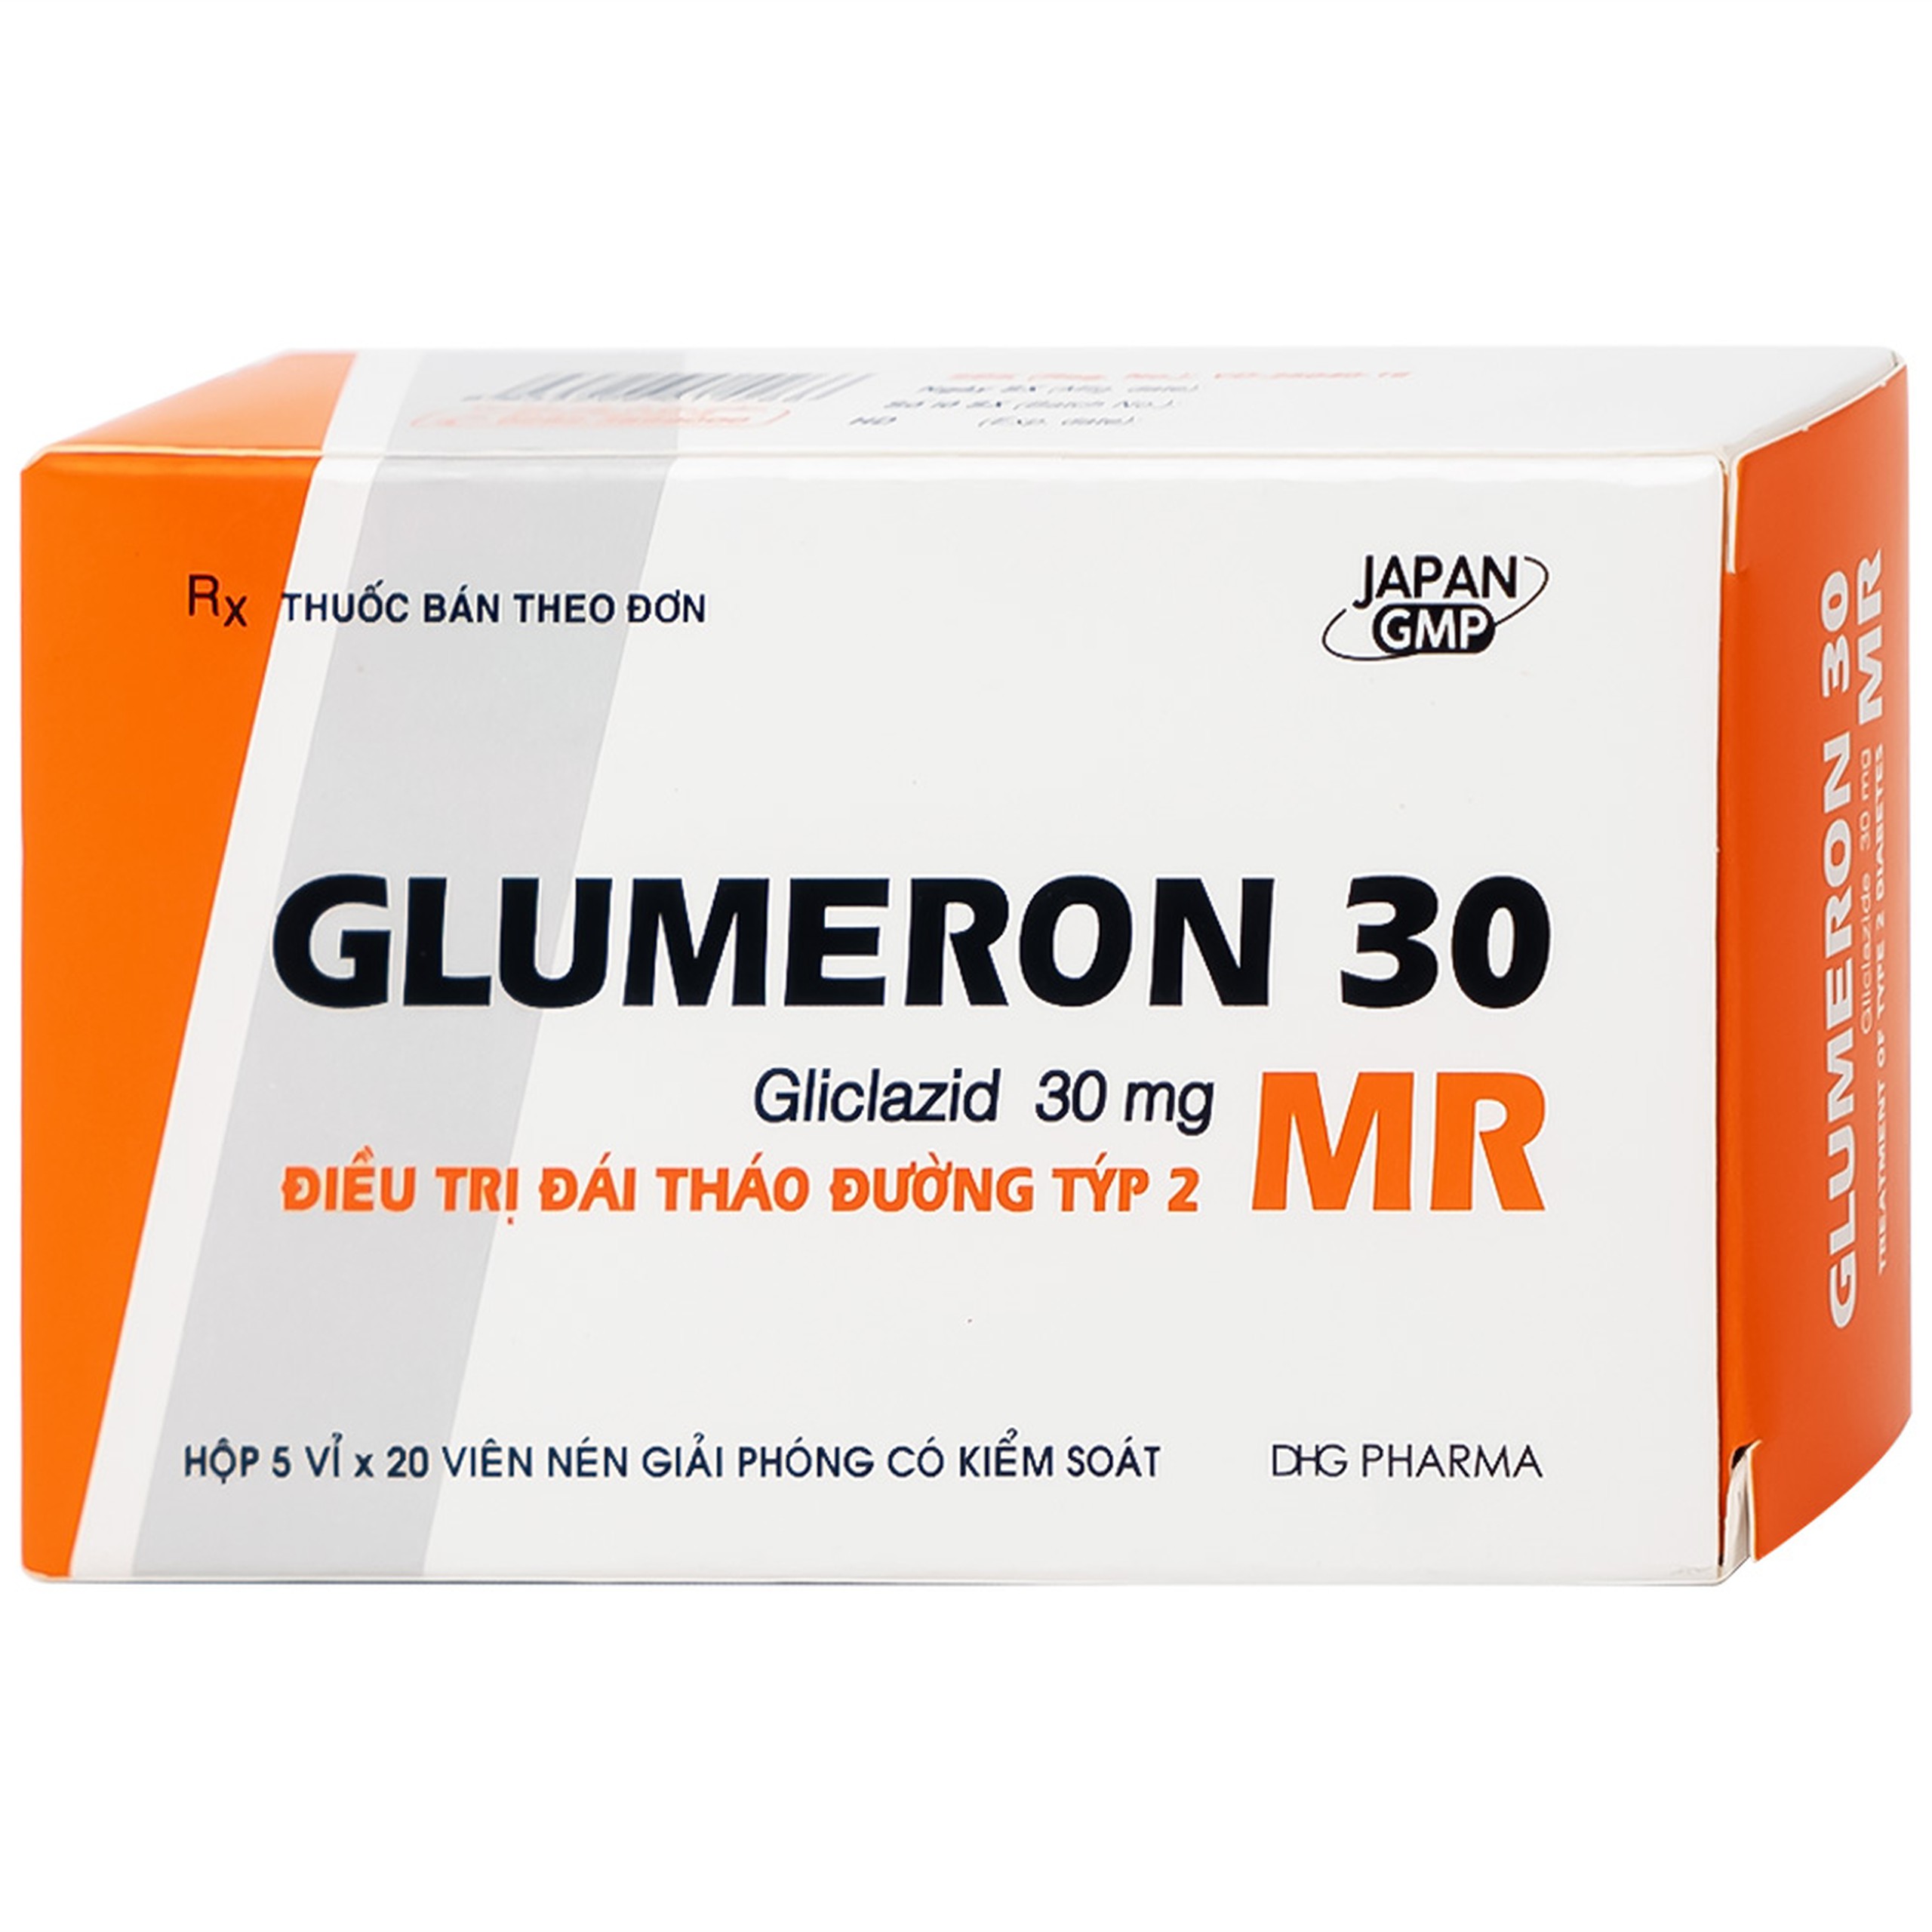 Thuốc Glumeron 30 MR DHG điều trị bệnh đái tháo đường tuýp 2 (5 vỉ x 20 viên)